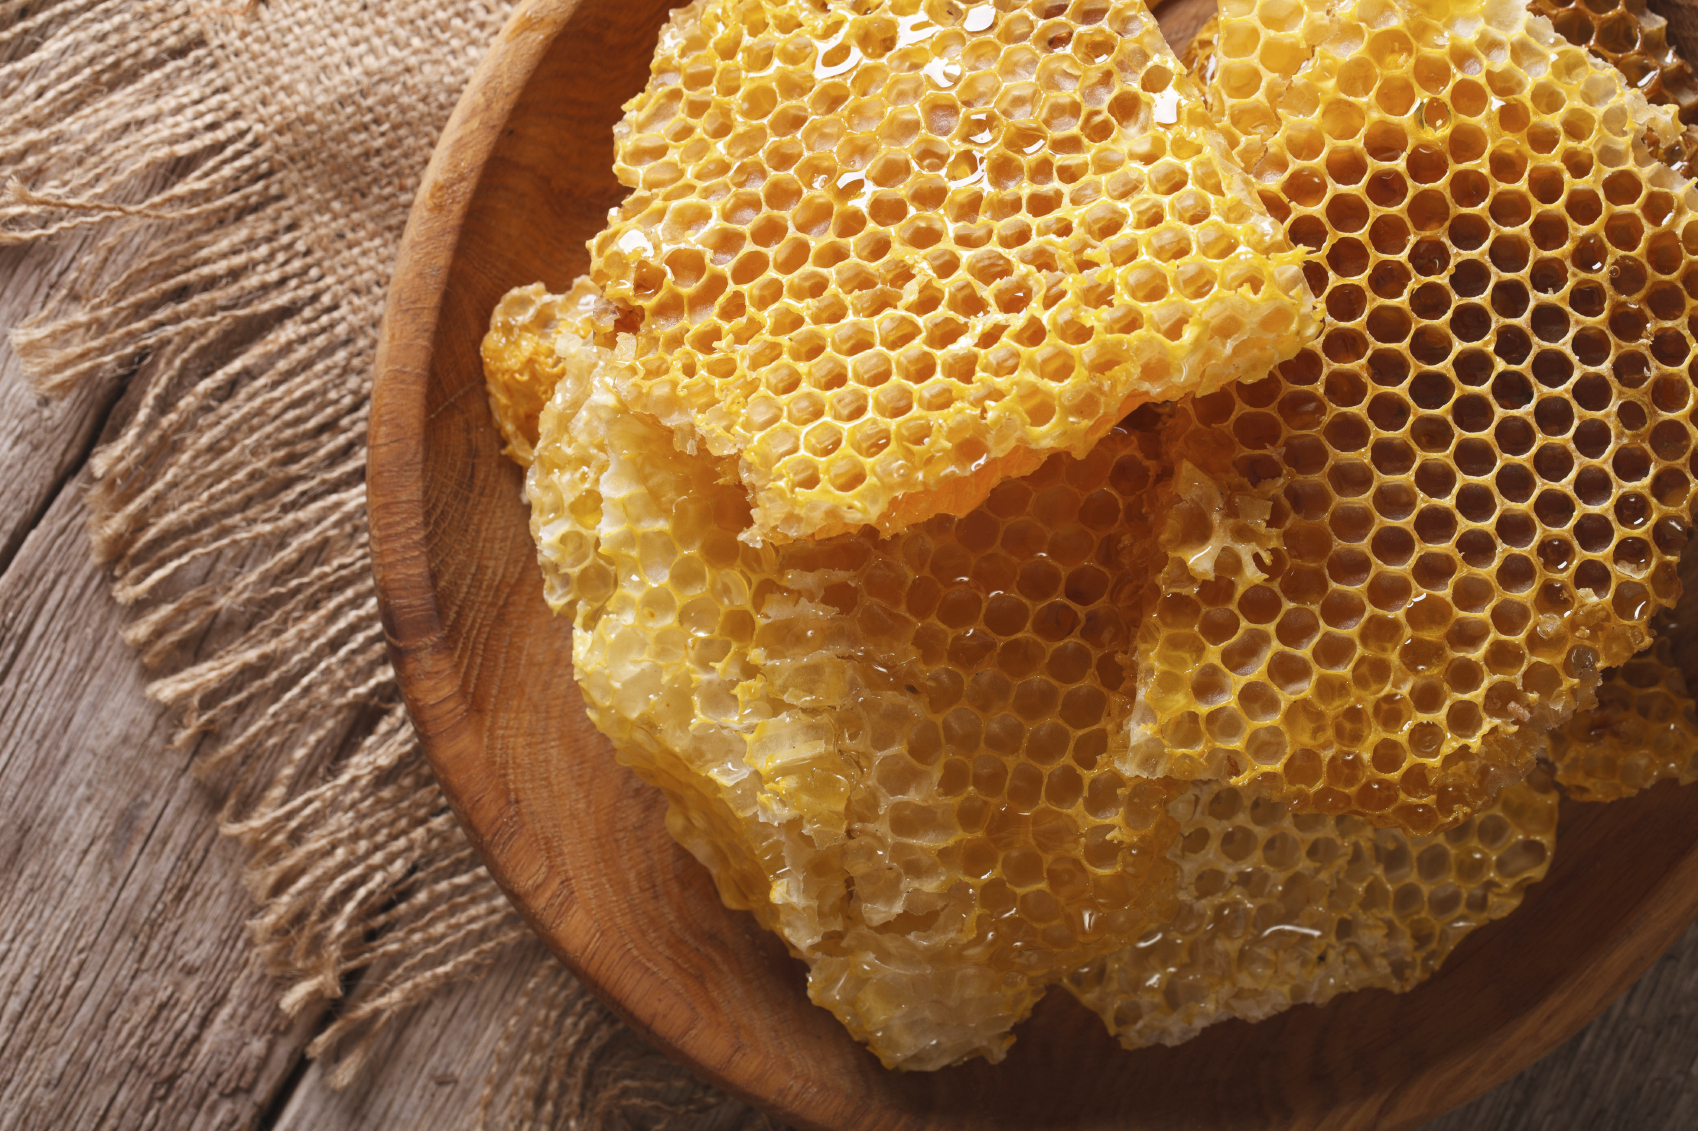 آشنایی با منافع و خطرات مصرف عسل خام